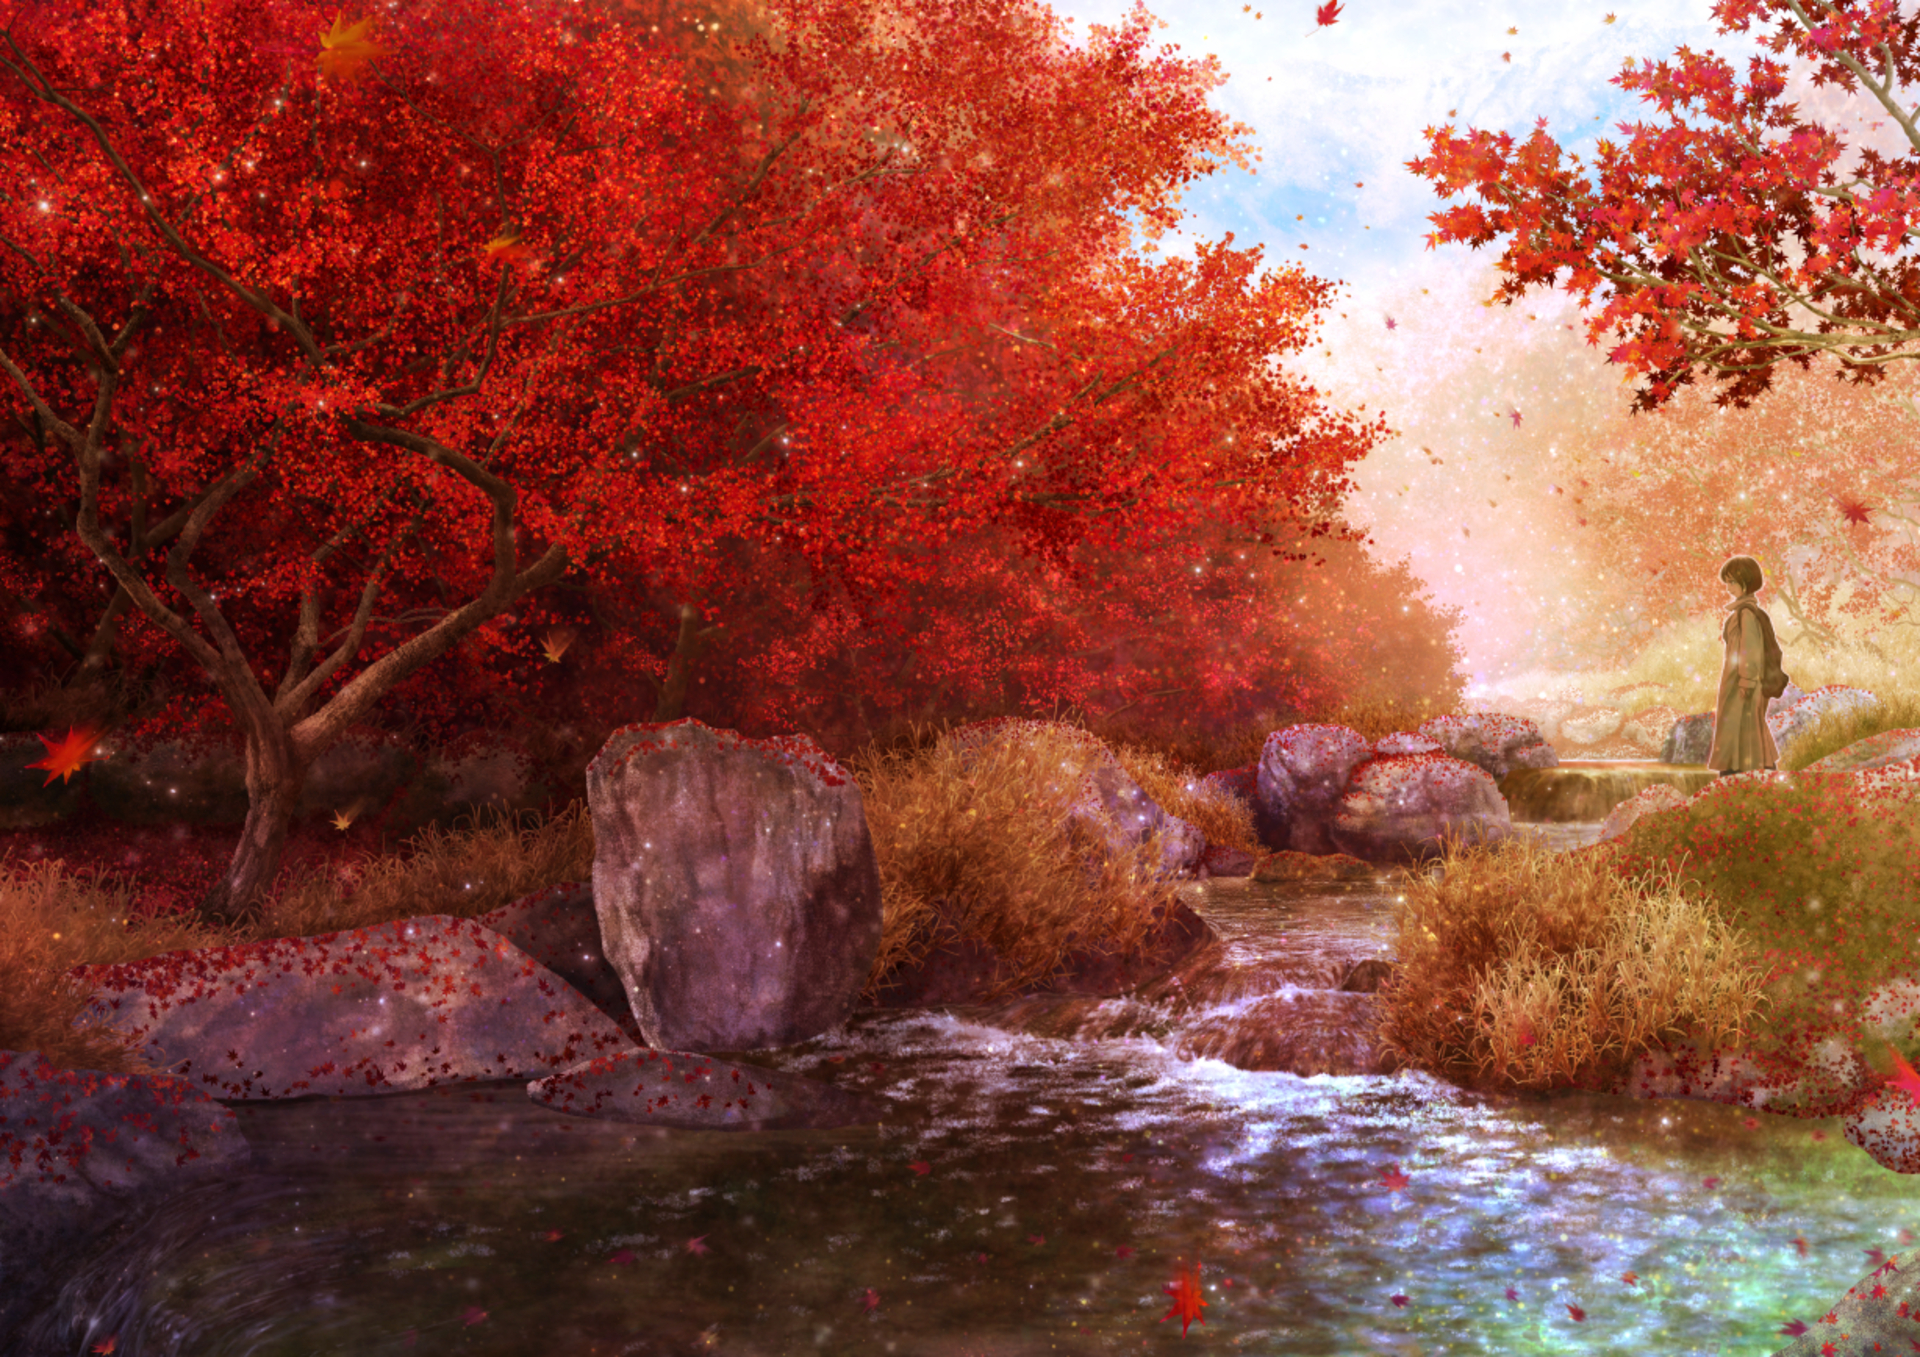 Скачать обои бесплатно Аниме, Река, Осень, Оригинал картинка на рабочий стол ПК